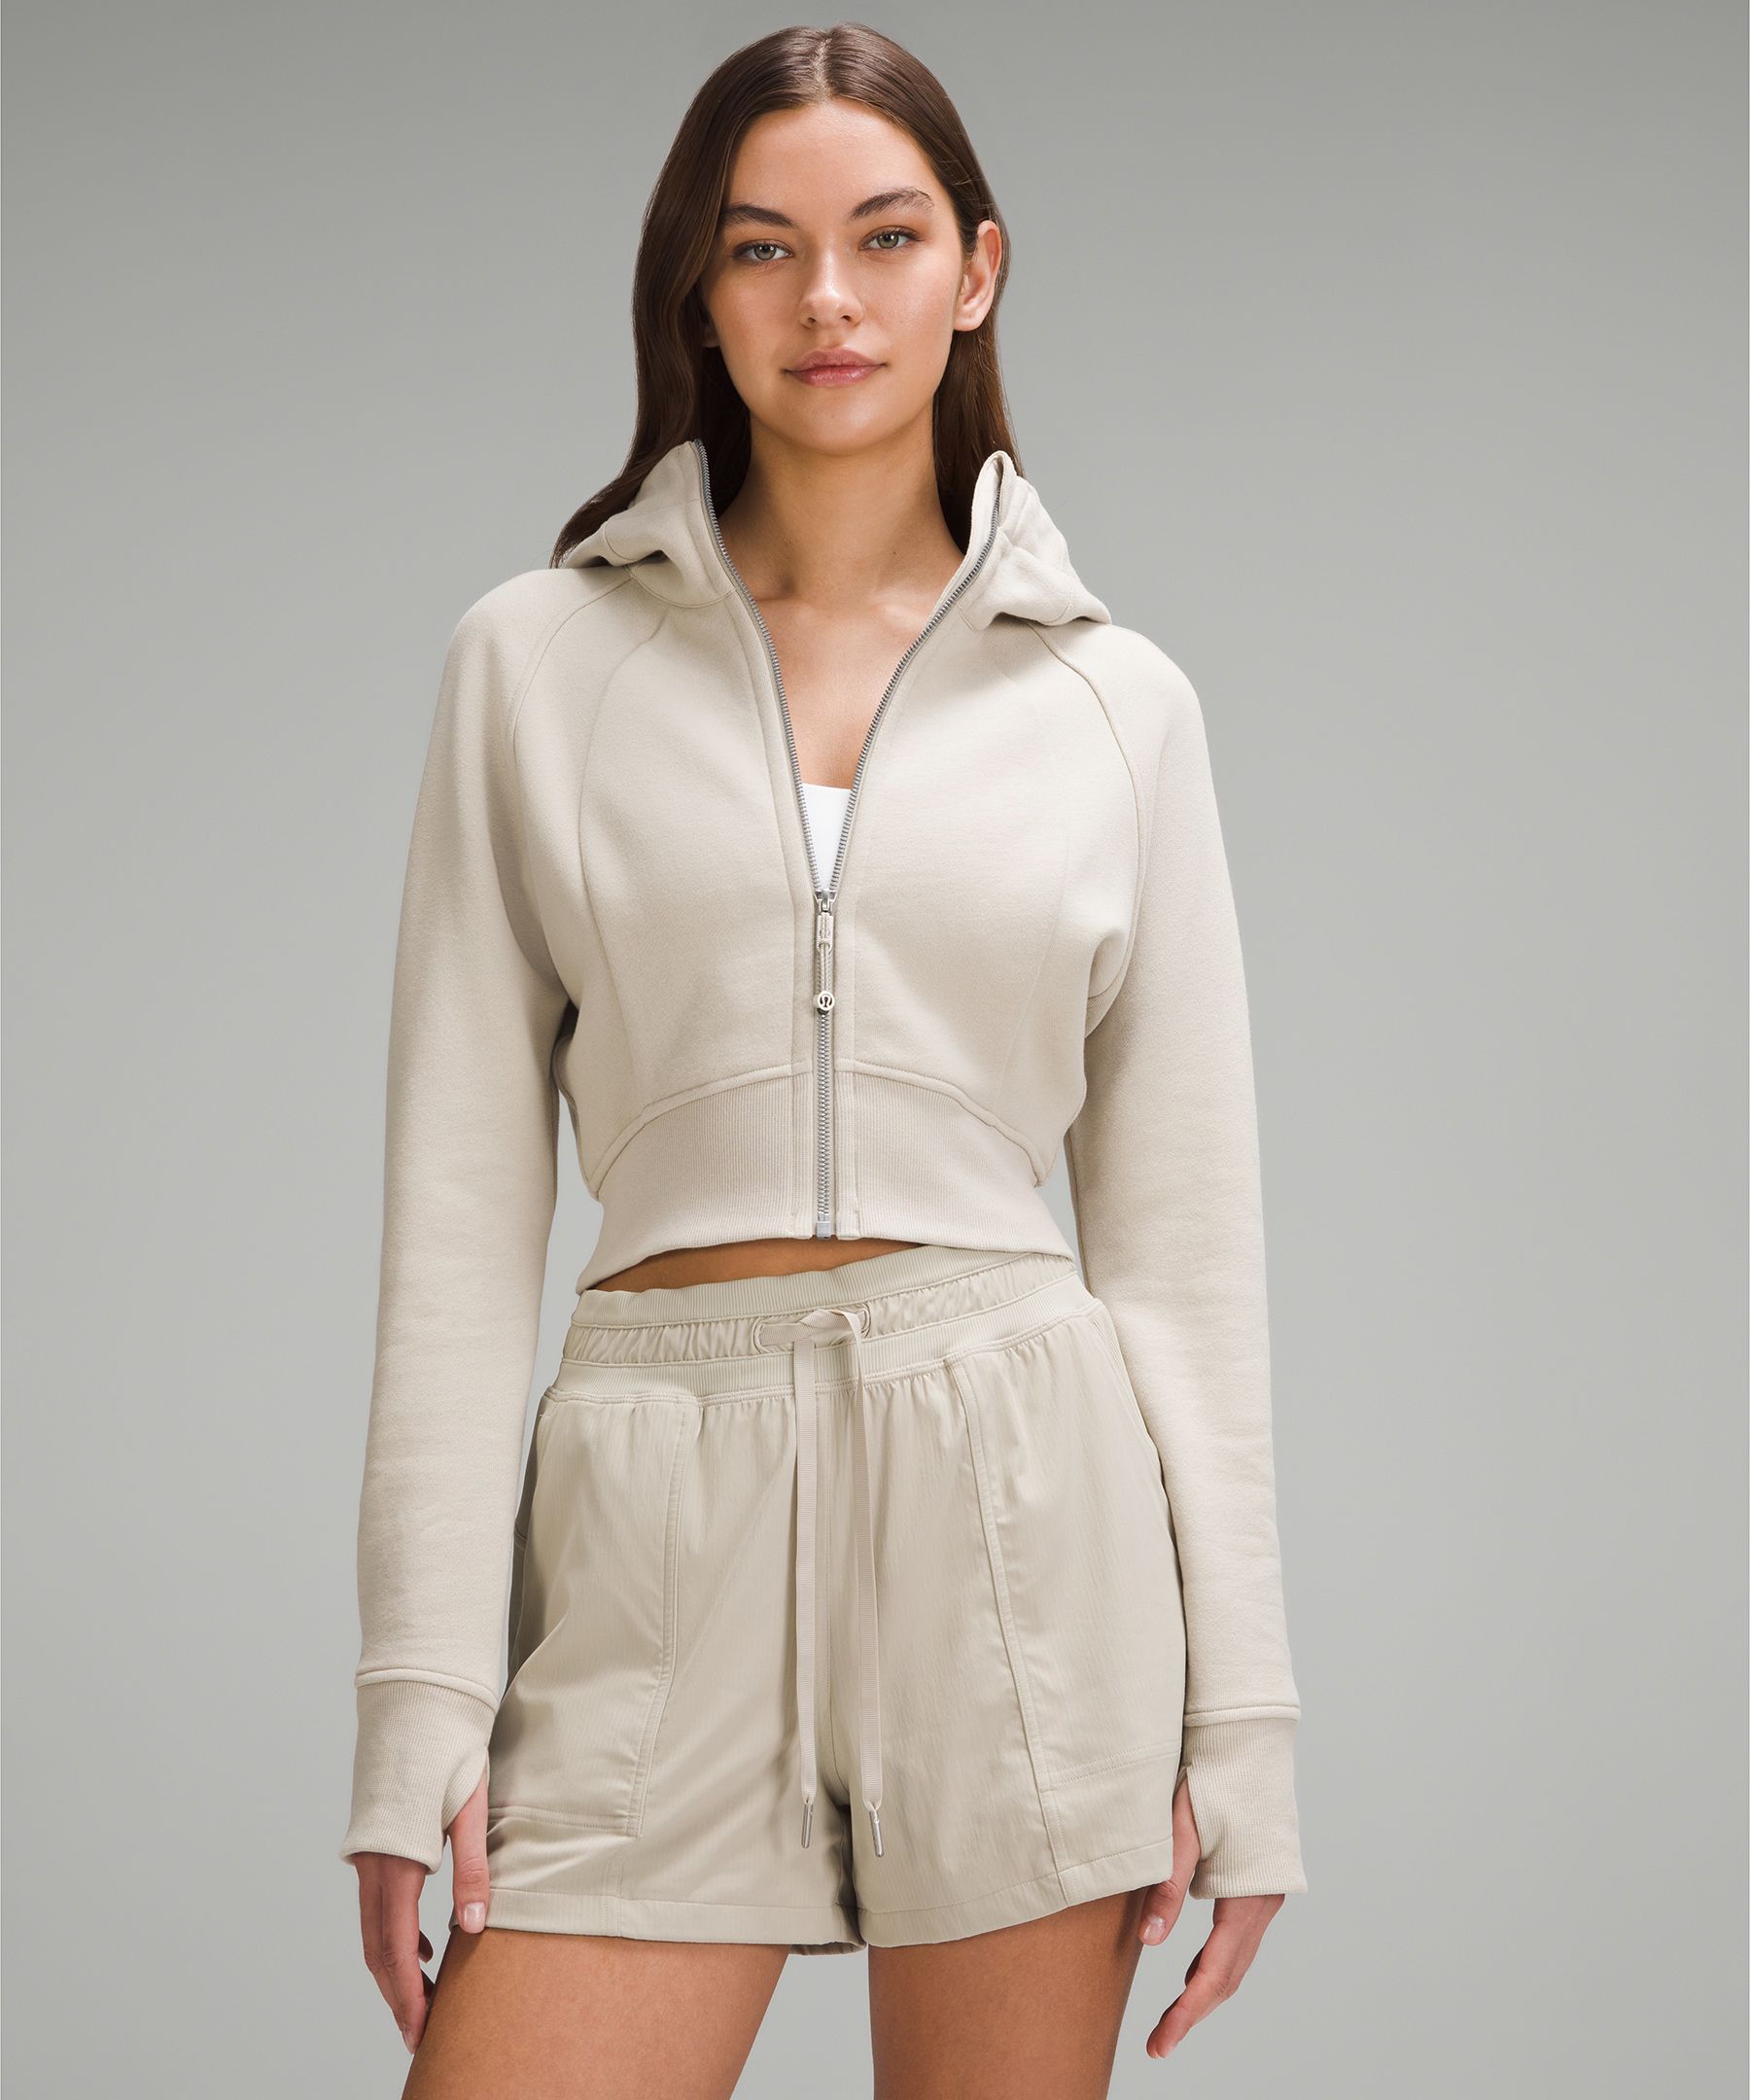 lululemon athletica, Jackets & Coats, Lululemon Cropped Hooded Zip Up  Sattva Jacket Size 6